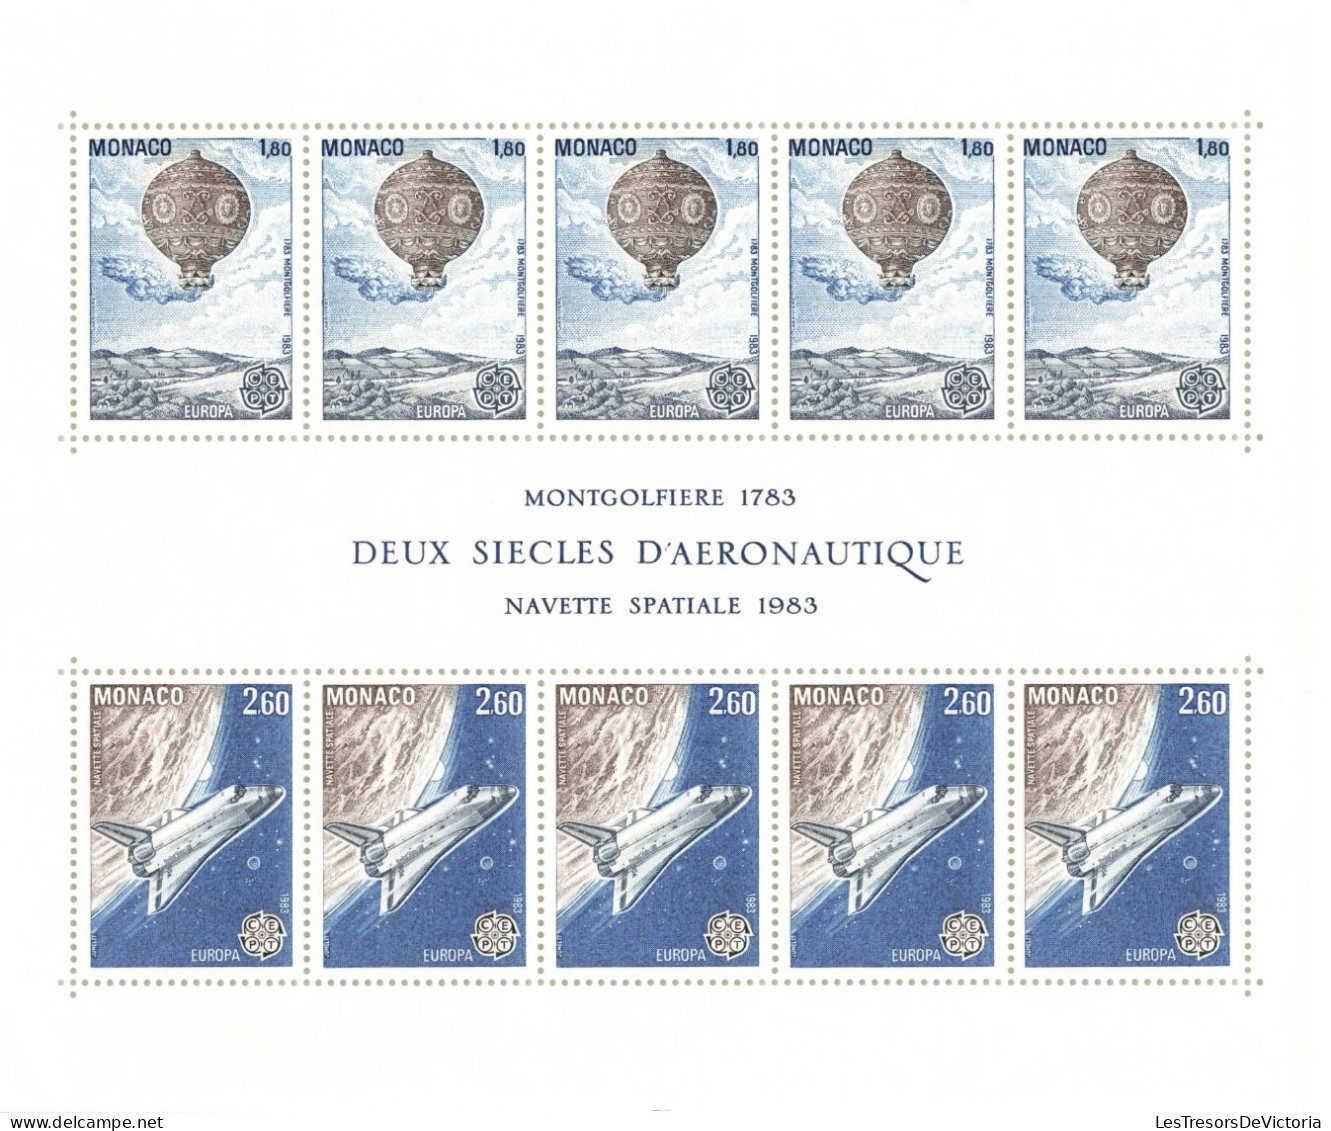 Monaco - Blocs MNH * - 1983 - Montgolfiere 1783 - Navette Spatiale 1983 - Deux Siècles D'aéronautique - Blocs